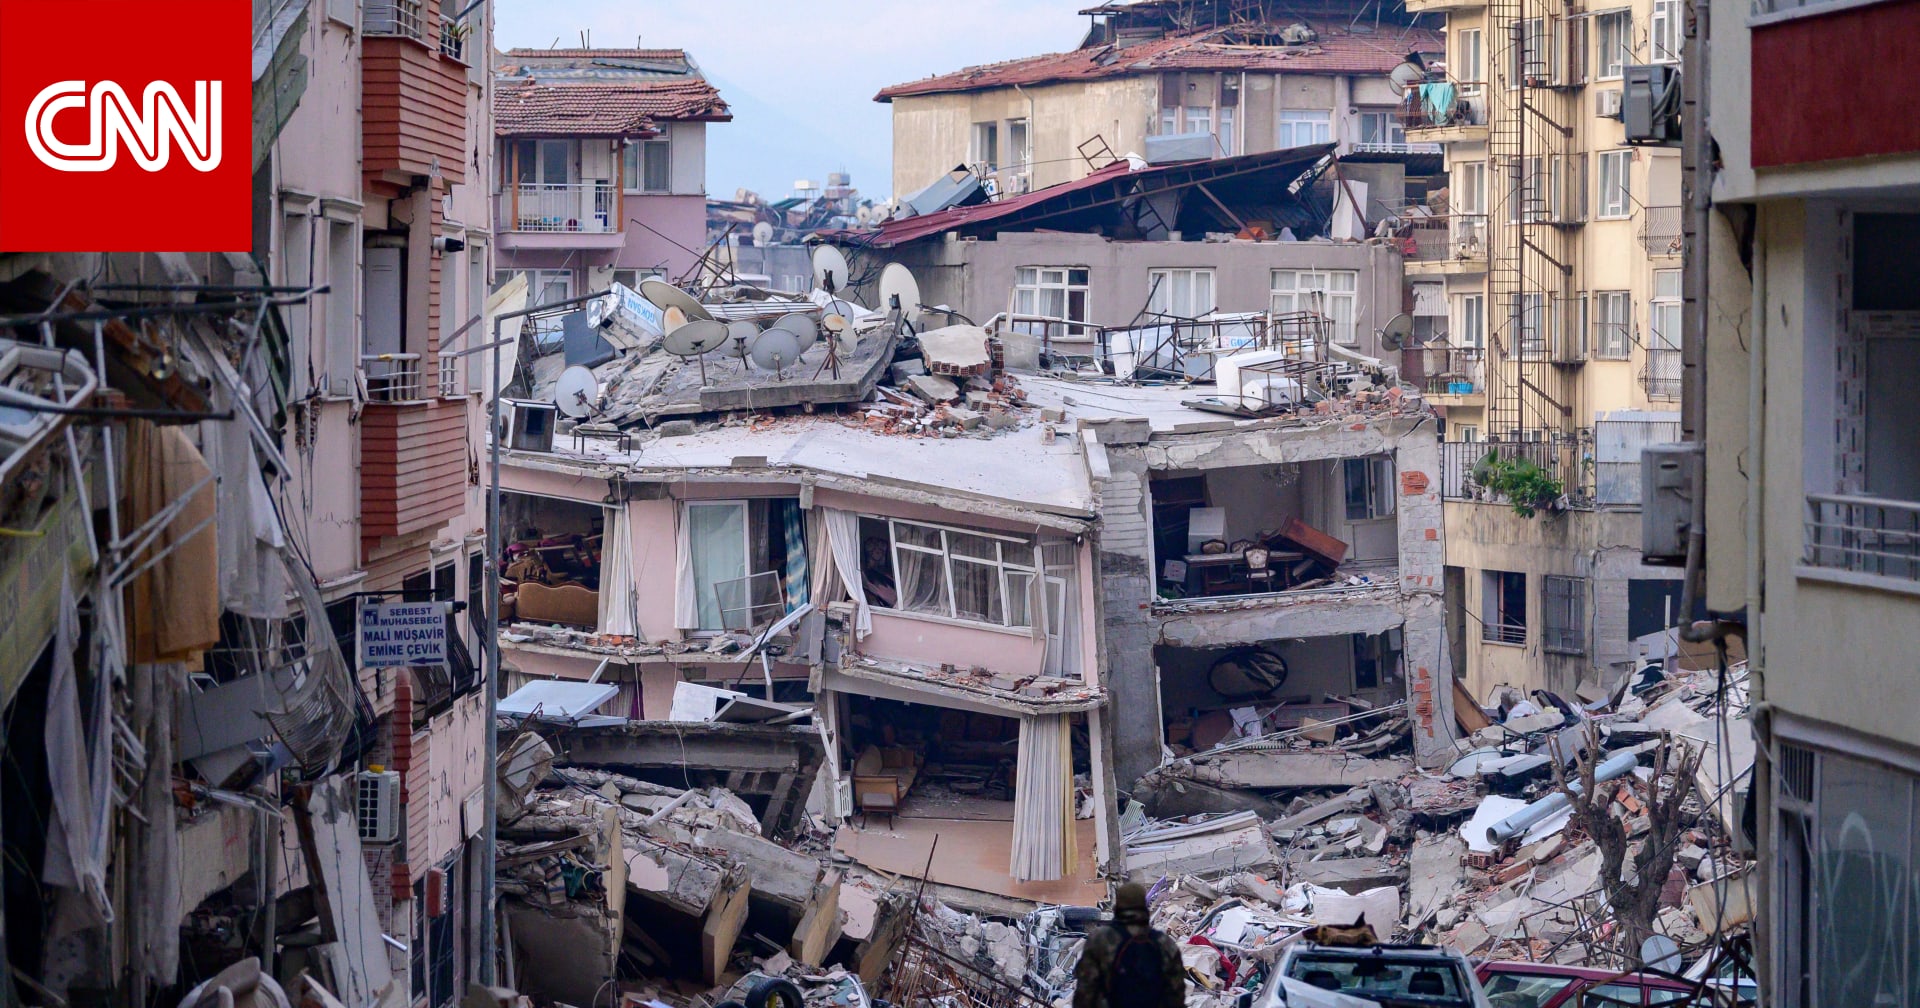 عدد قتلى زلزال تركيا وسوريا يتجاوز 50 ألفا.. والمعارضة التركية: “الناس غاضبون”